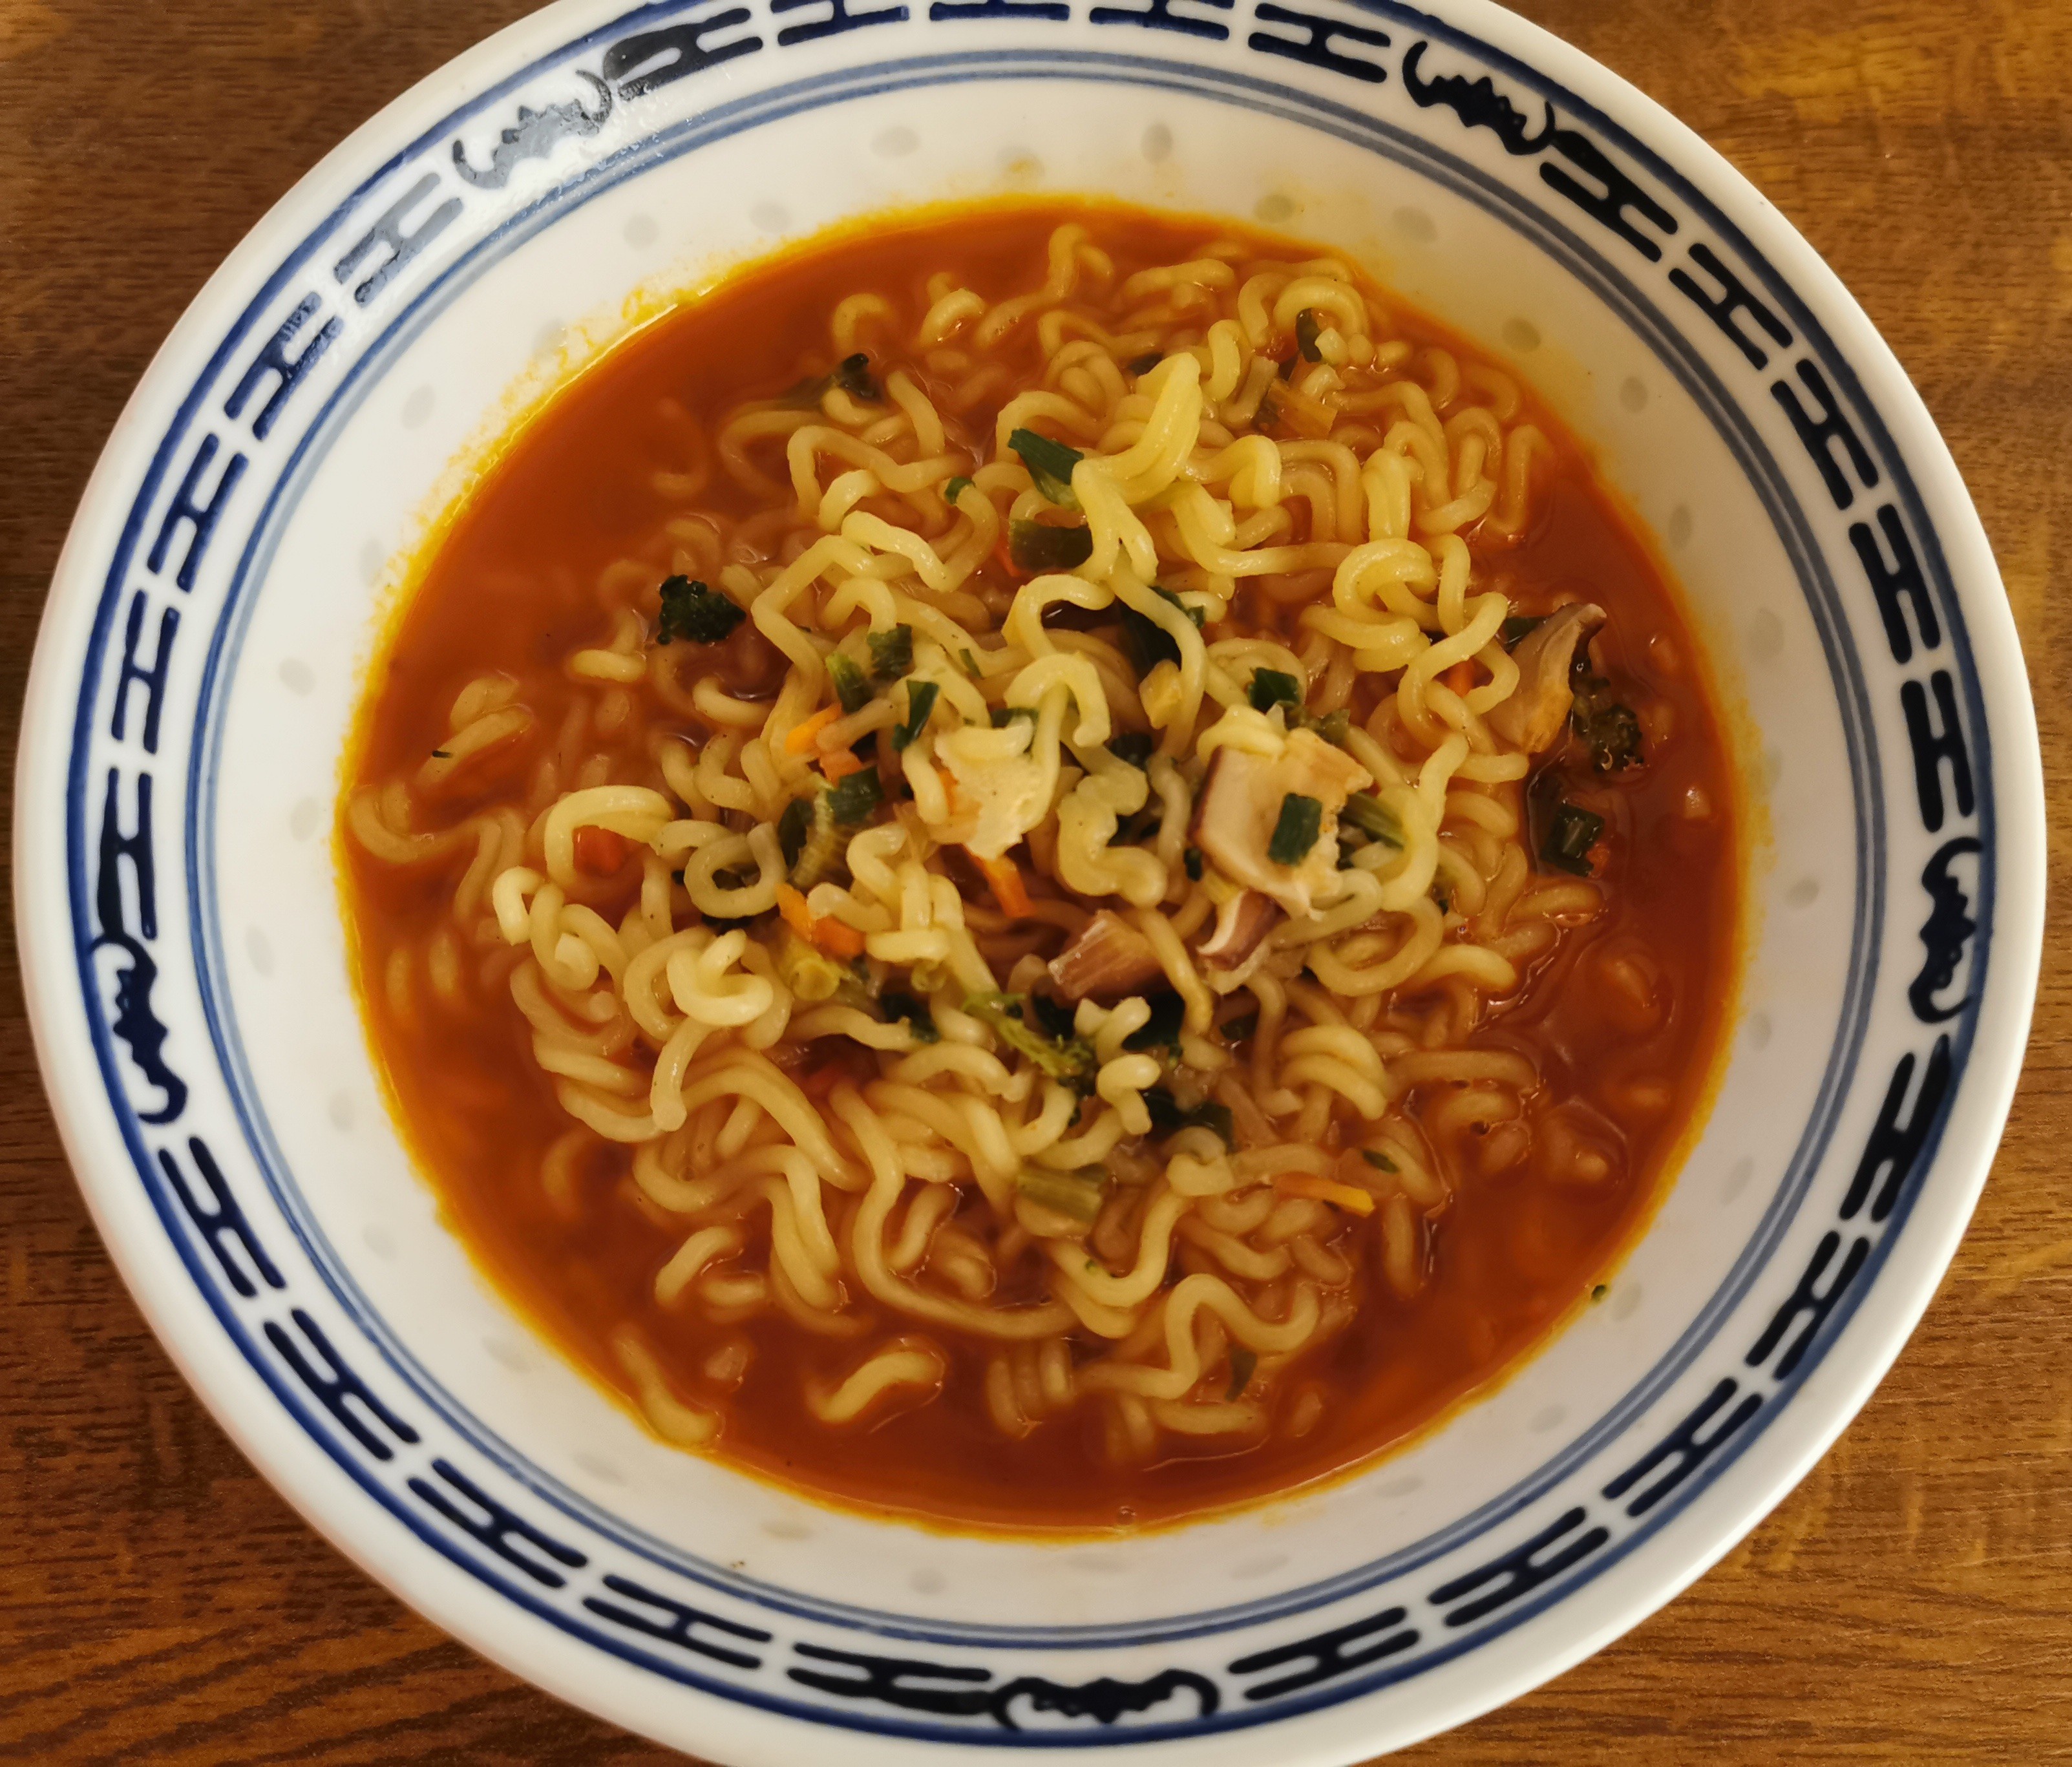 #2446: Samyang "Vegetasty Noodle Soup" (2022)